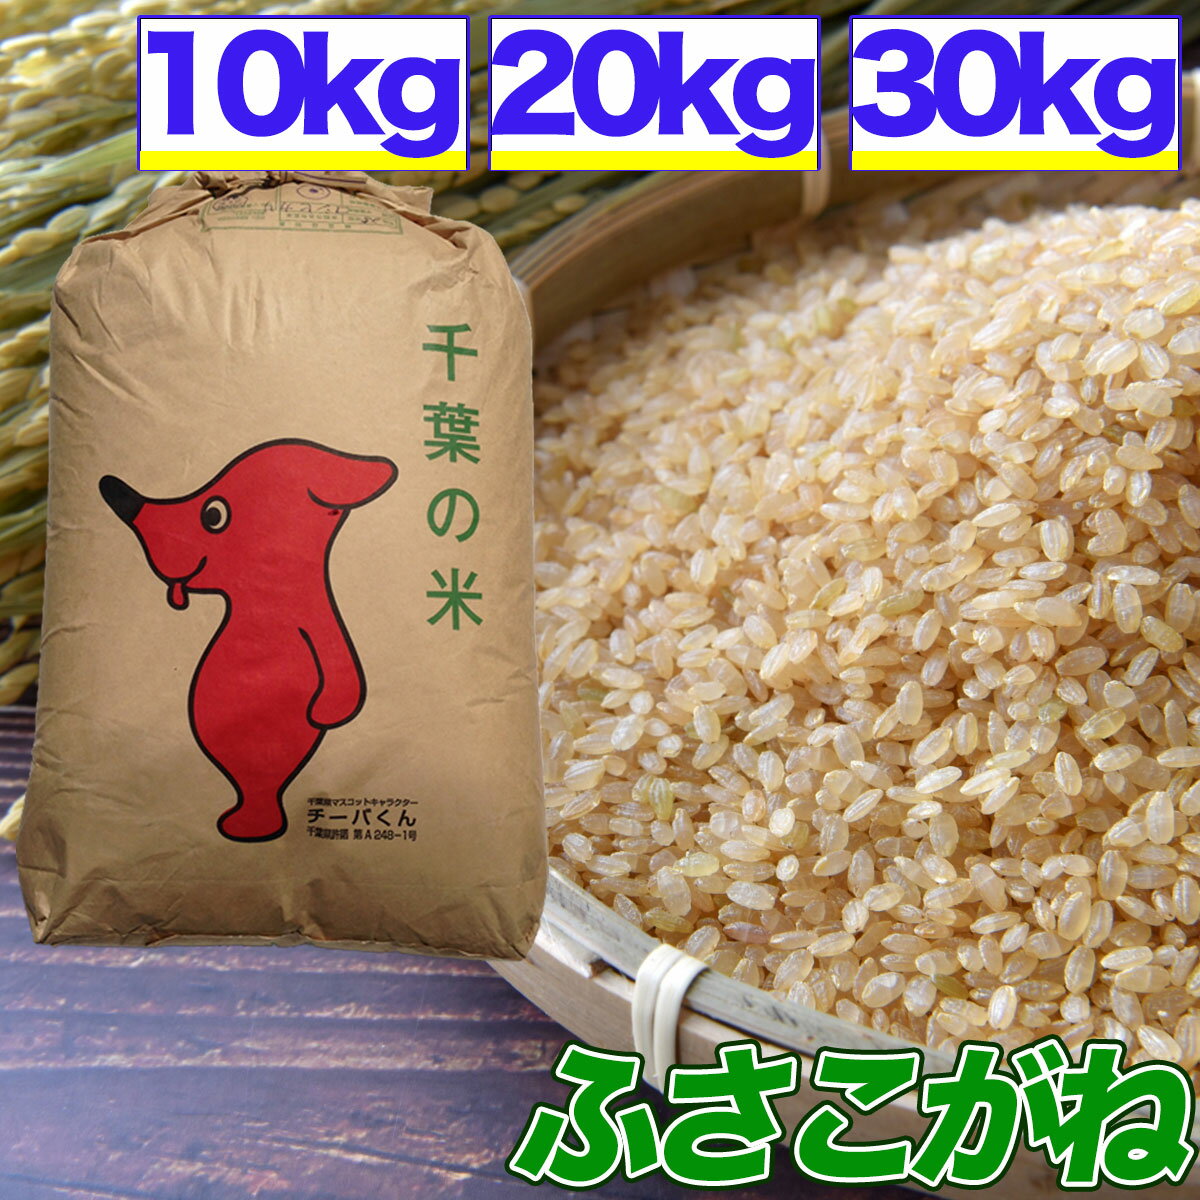 令和5年産 ふさこがね 10kg 20kg 30kg 玄米 選別済 玄米食でも安心の選別済玄米 送料無料 精米無料 精米 白米 発送可…